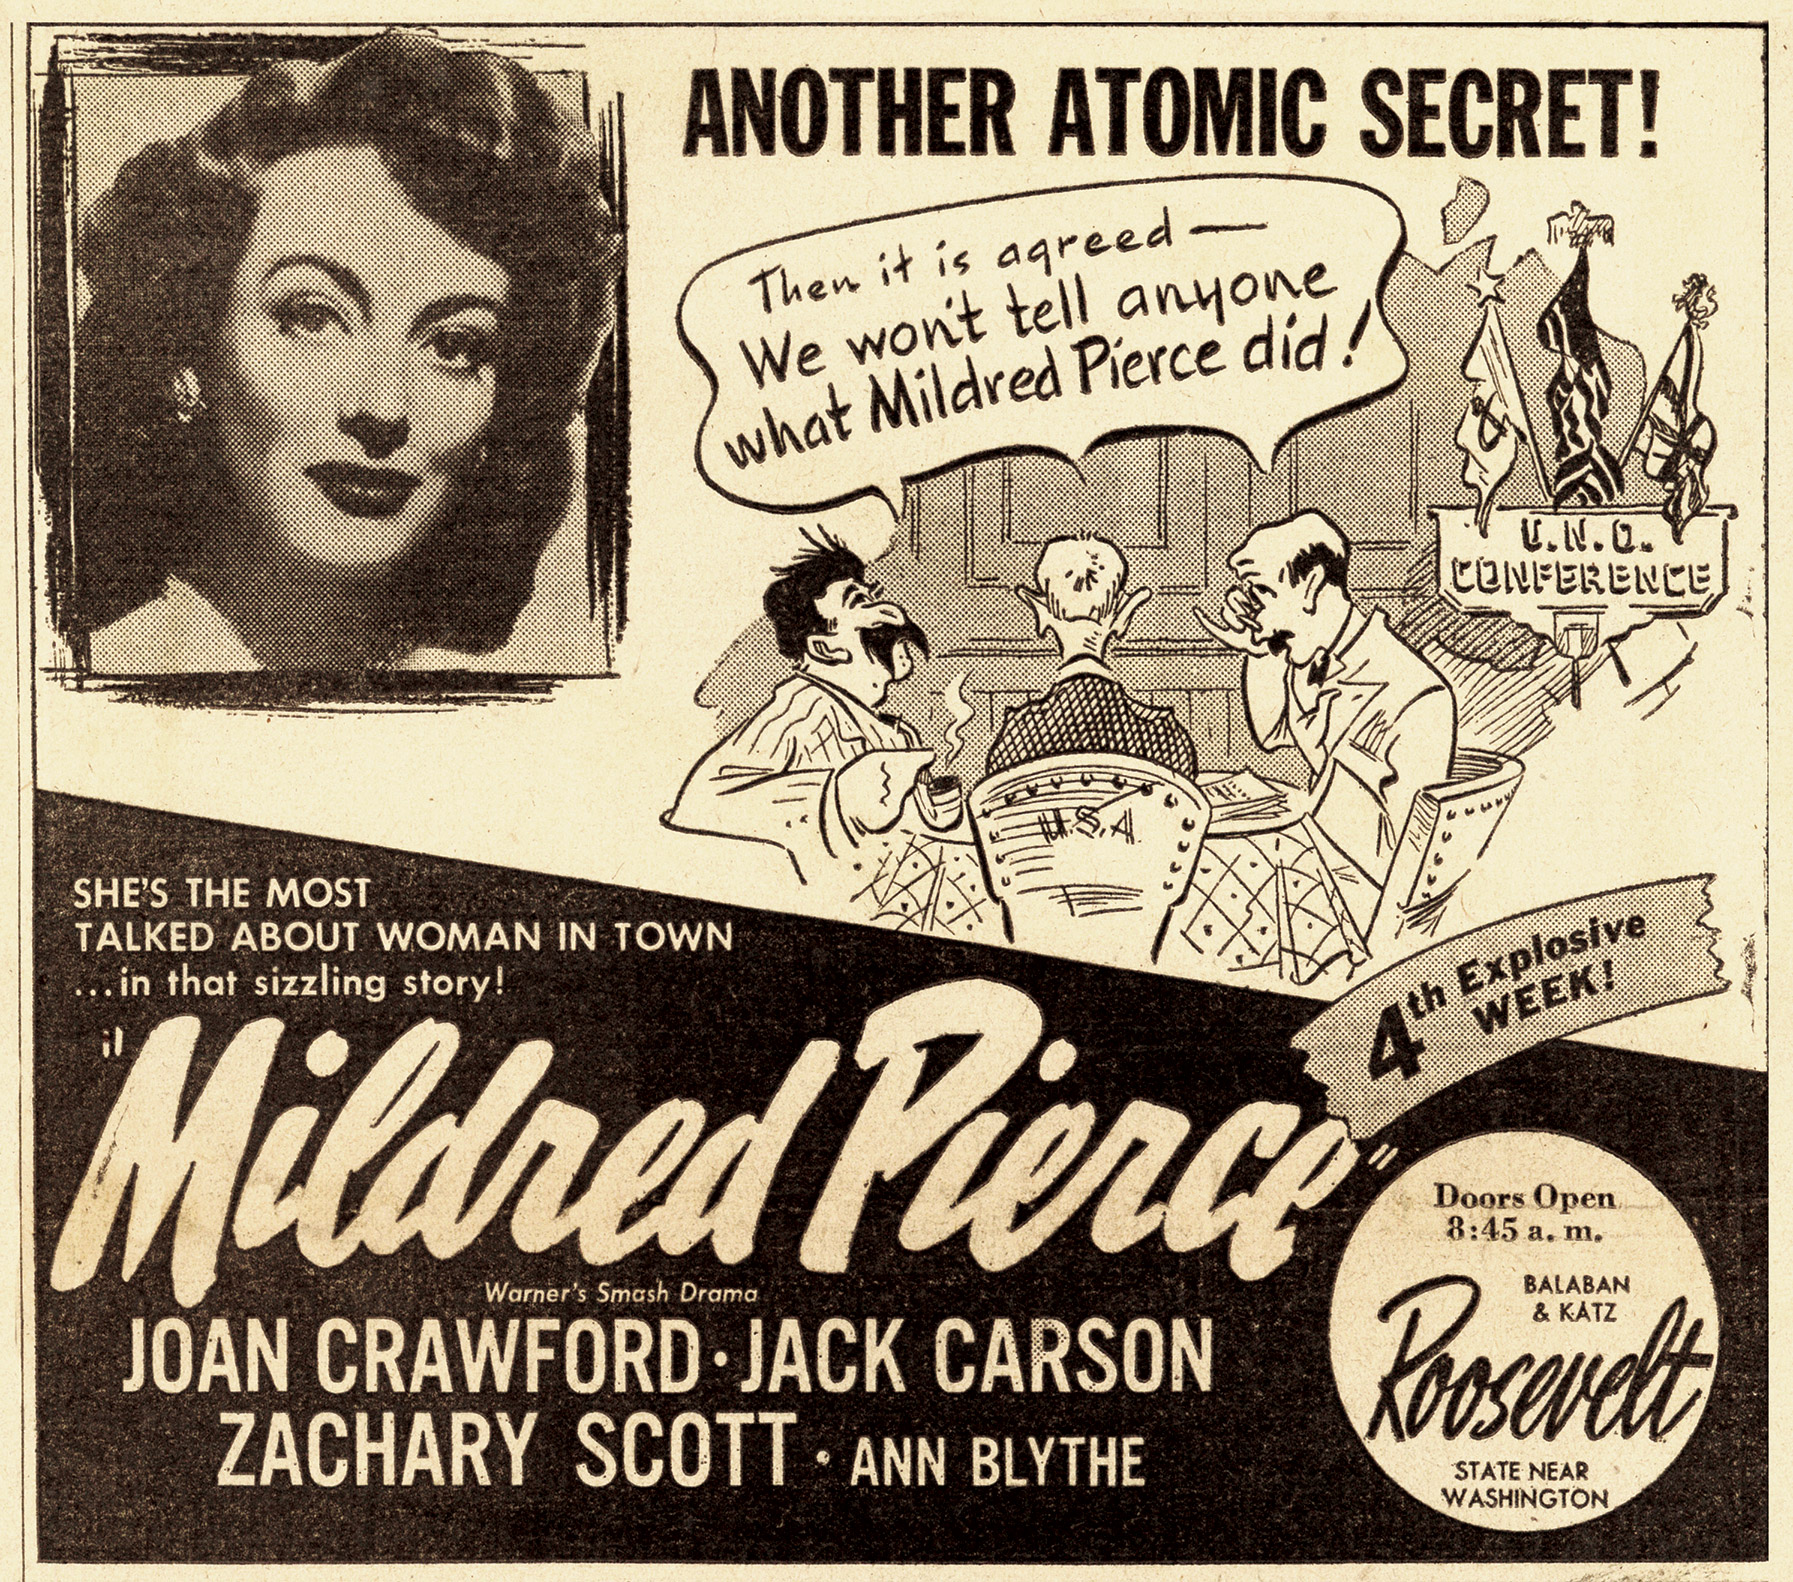 Mildred Pierce newspaper advertisement, 1945.